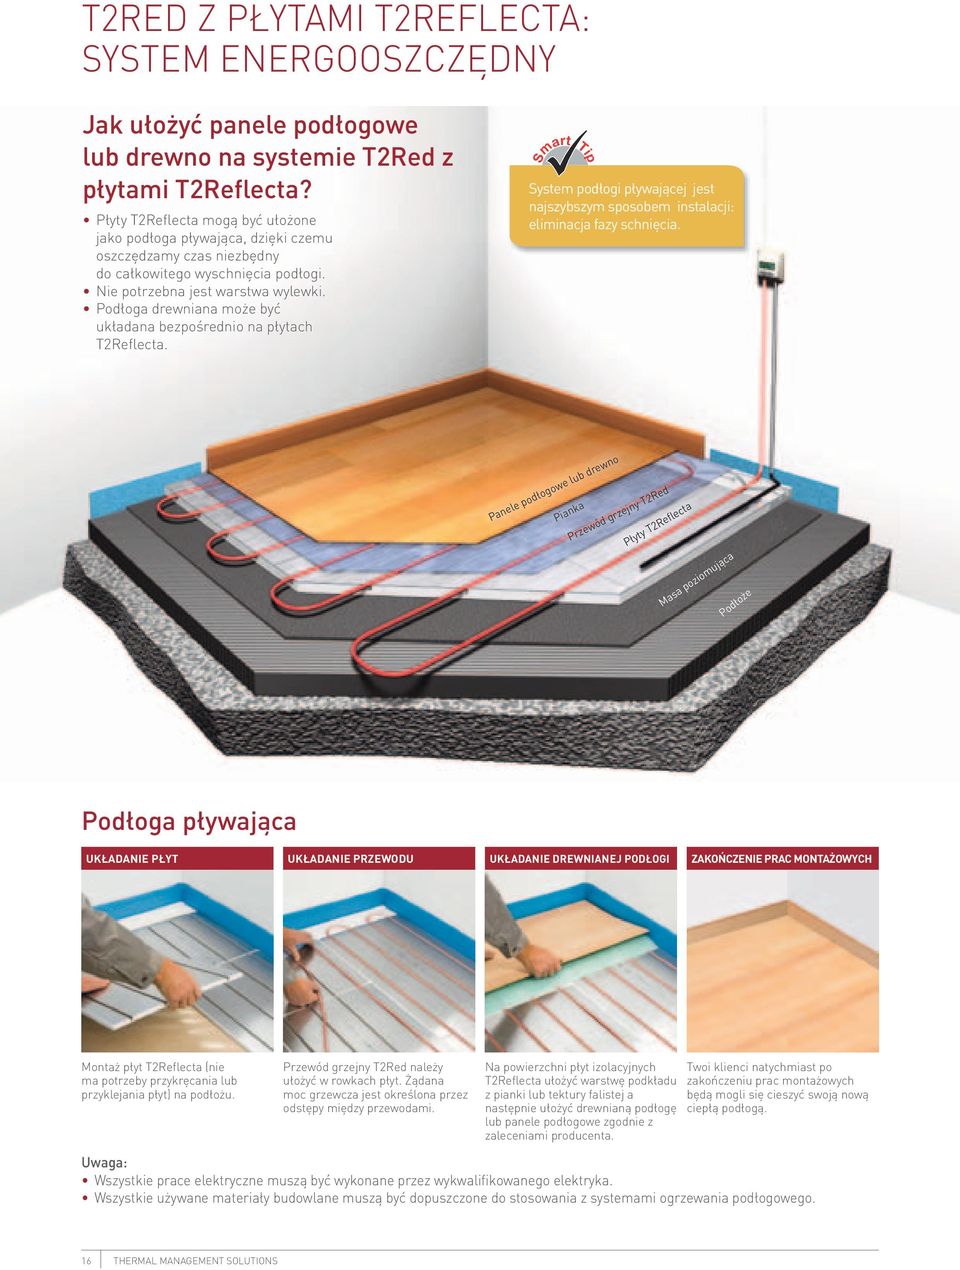 Podłoga drewniana może być układana bezpośrednio na płytach T2Reflecta. Smart Tip System podłogi pływającej jest najszybszym sposobem instalacji: eliminacja fazy schnięcia.